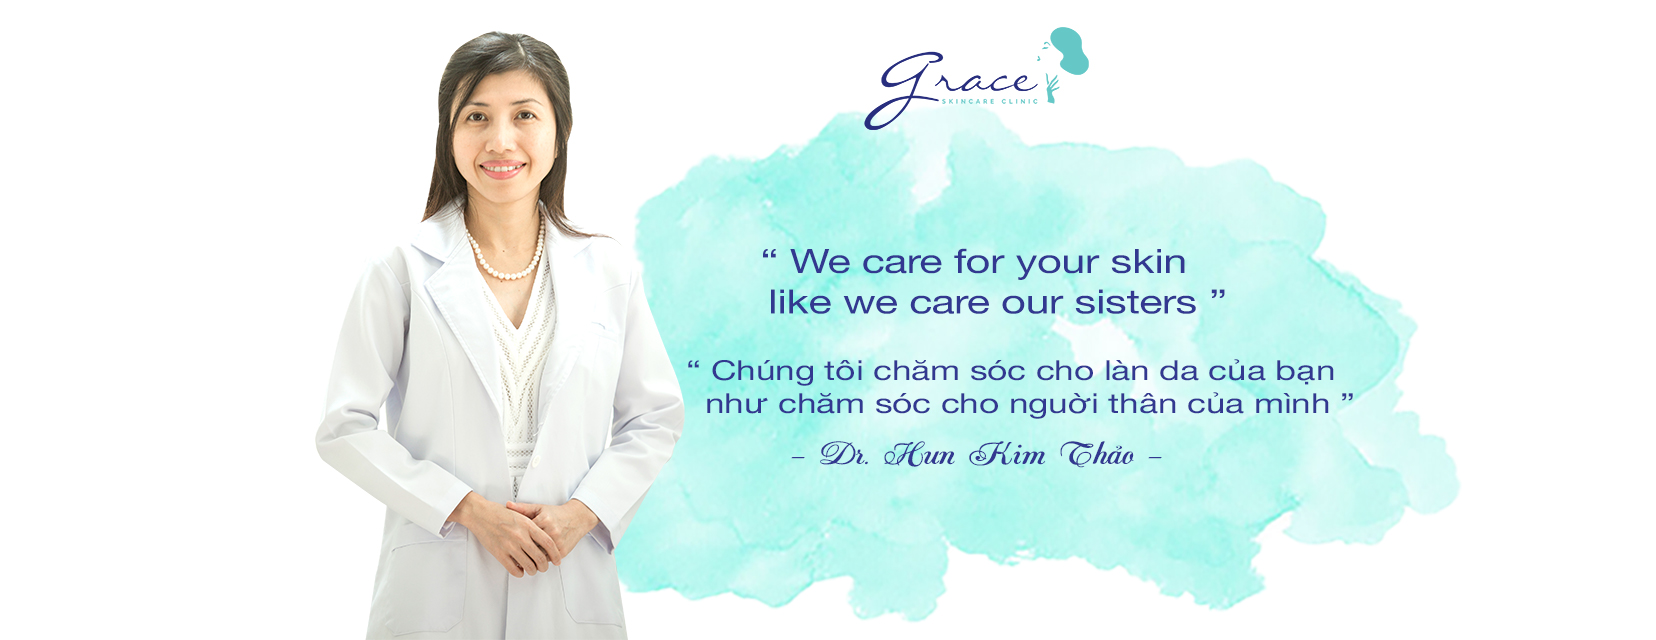 TRƯỞNG NHÓM Y KHOA ĐIỀU DƯỠNG | MEDICAL TEAM LEADER-Công ty TNHH May Hun (Thương hiệu Grace Skincare Clinic)